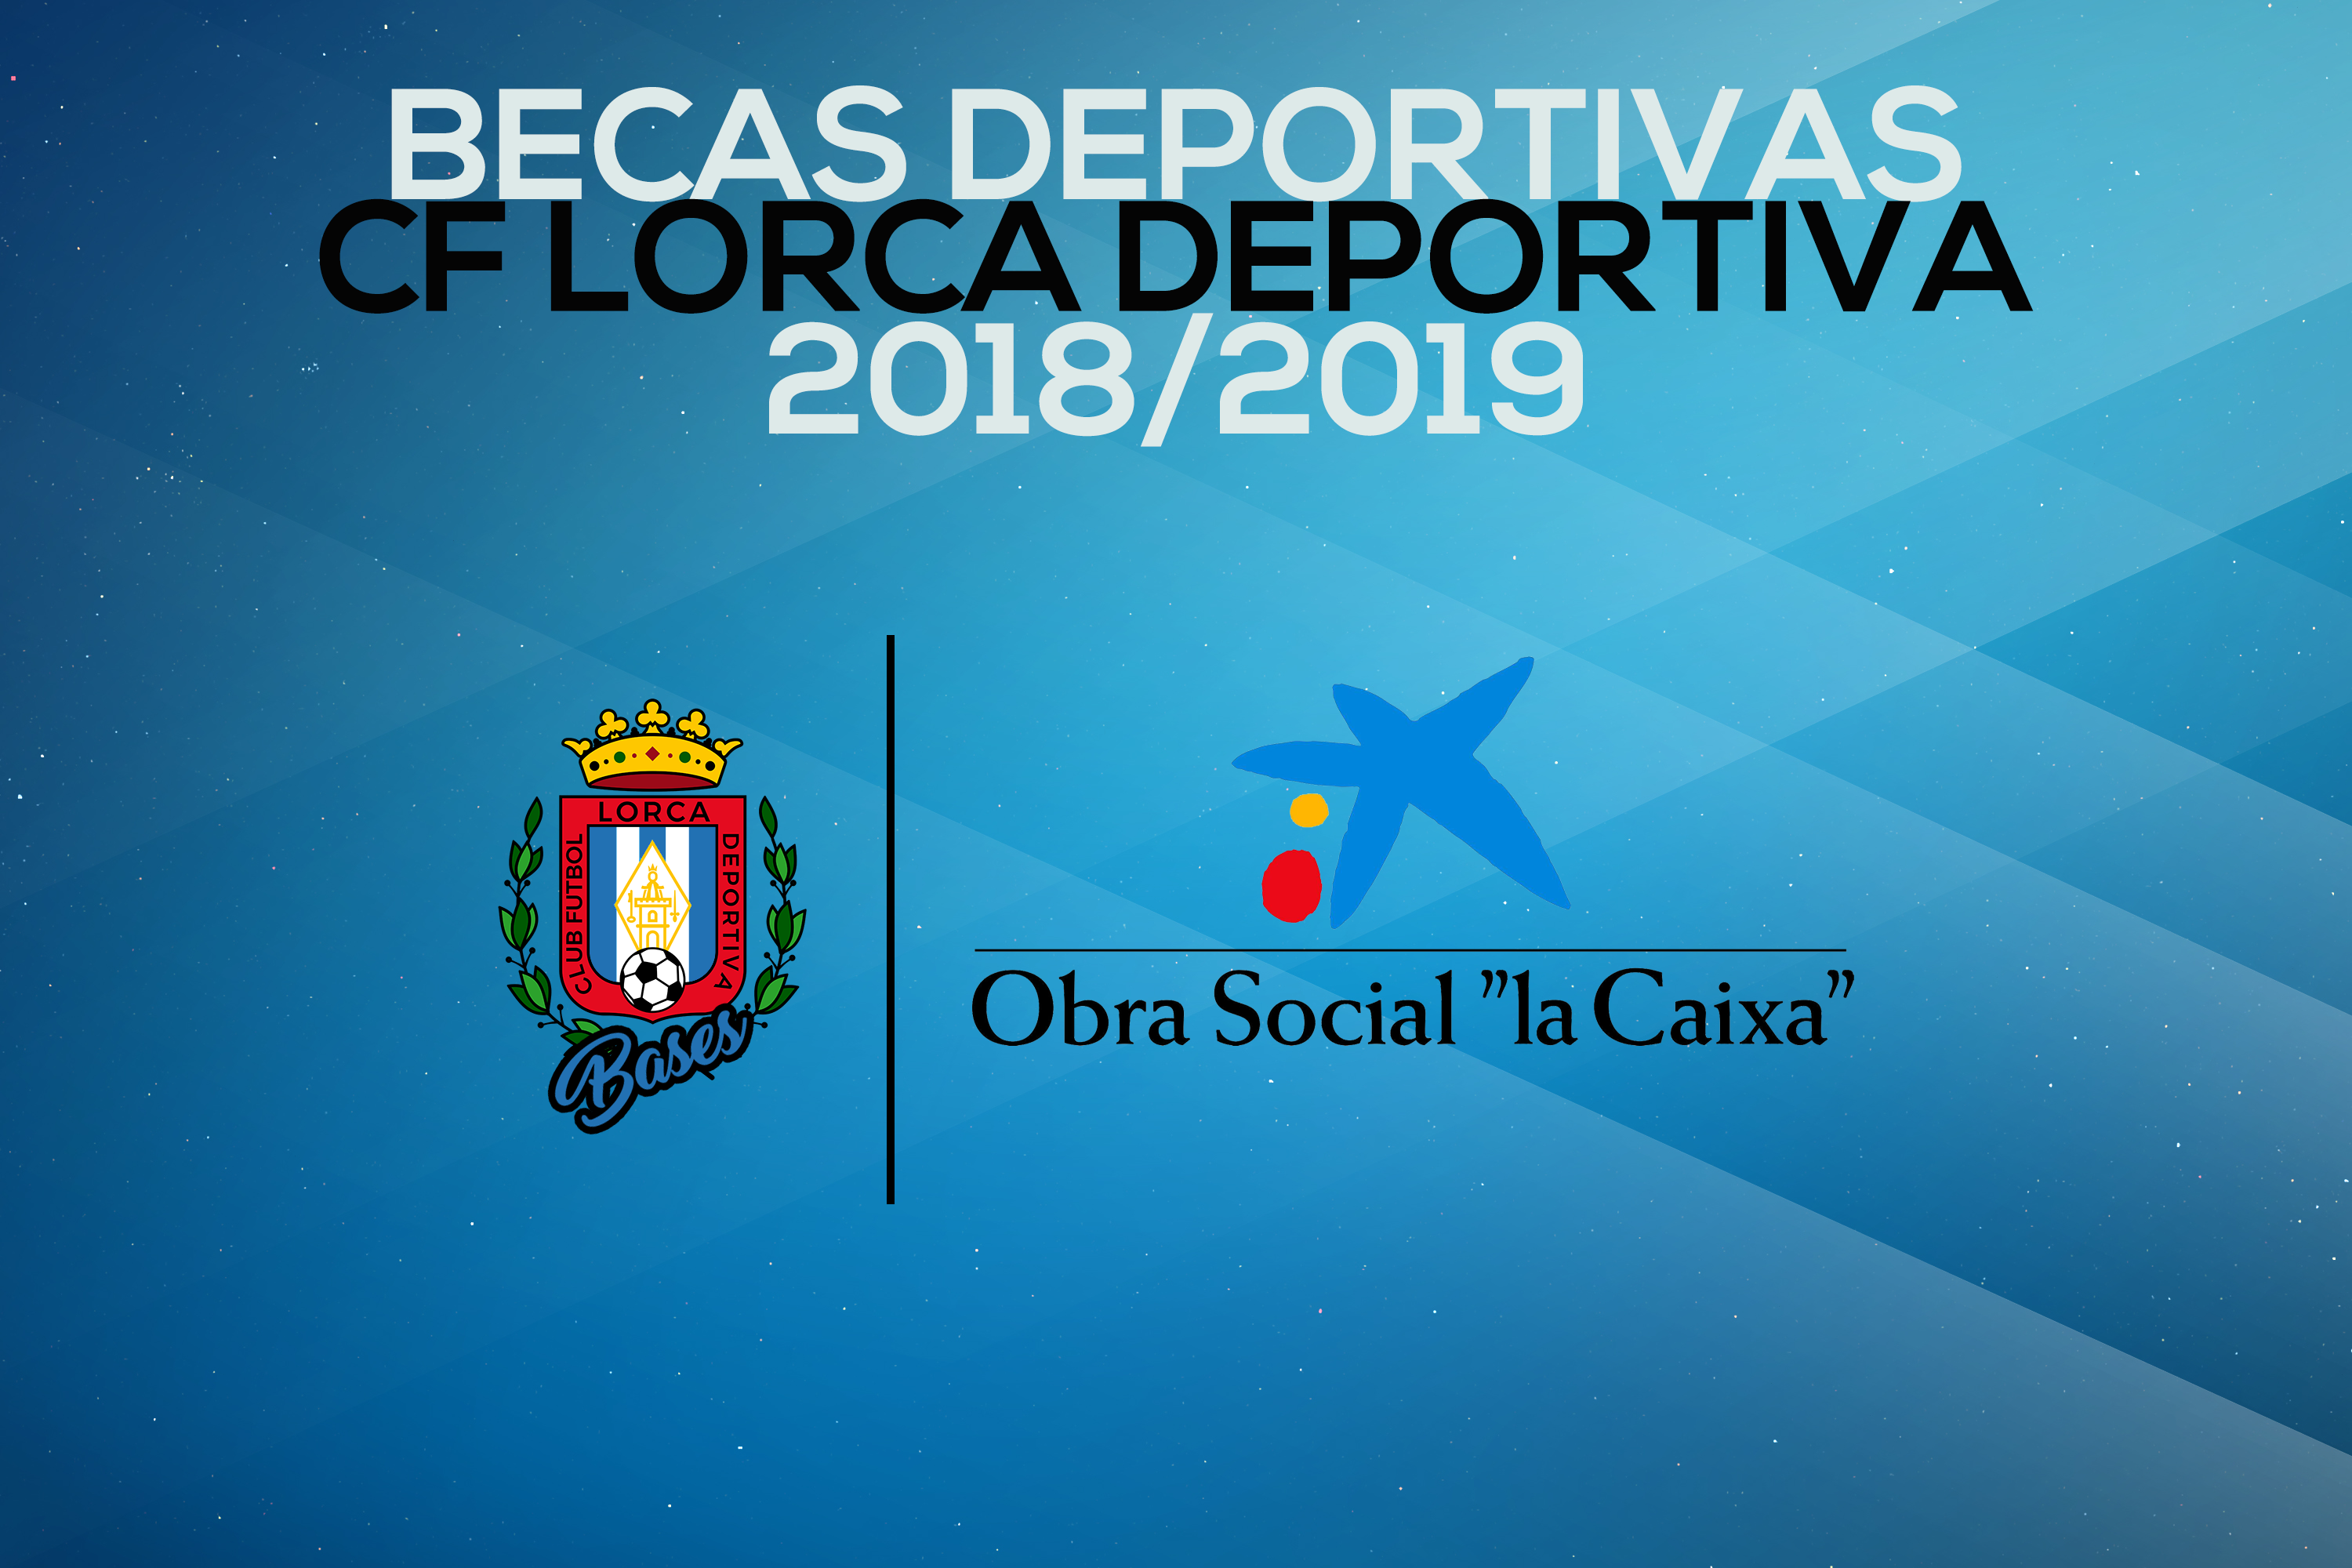 En marcha las Becas Deportivas 2018/2019 de la Cantera del Lorca Deportiva con la colaboración de la Obra Social de La Caixa